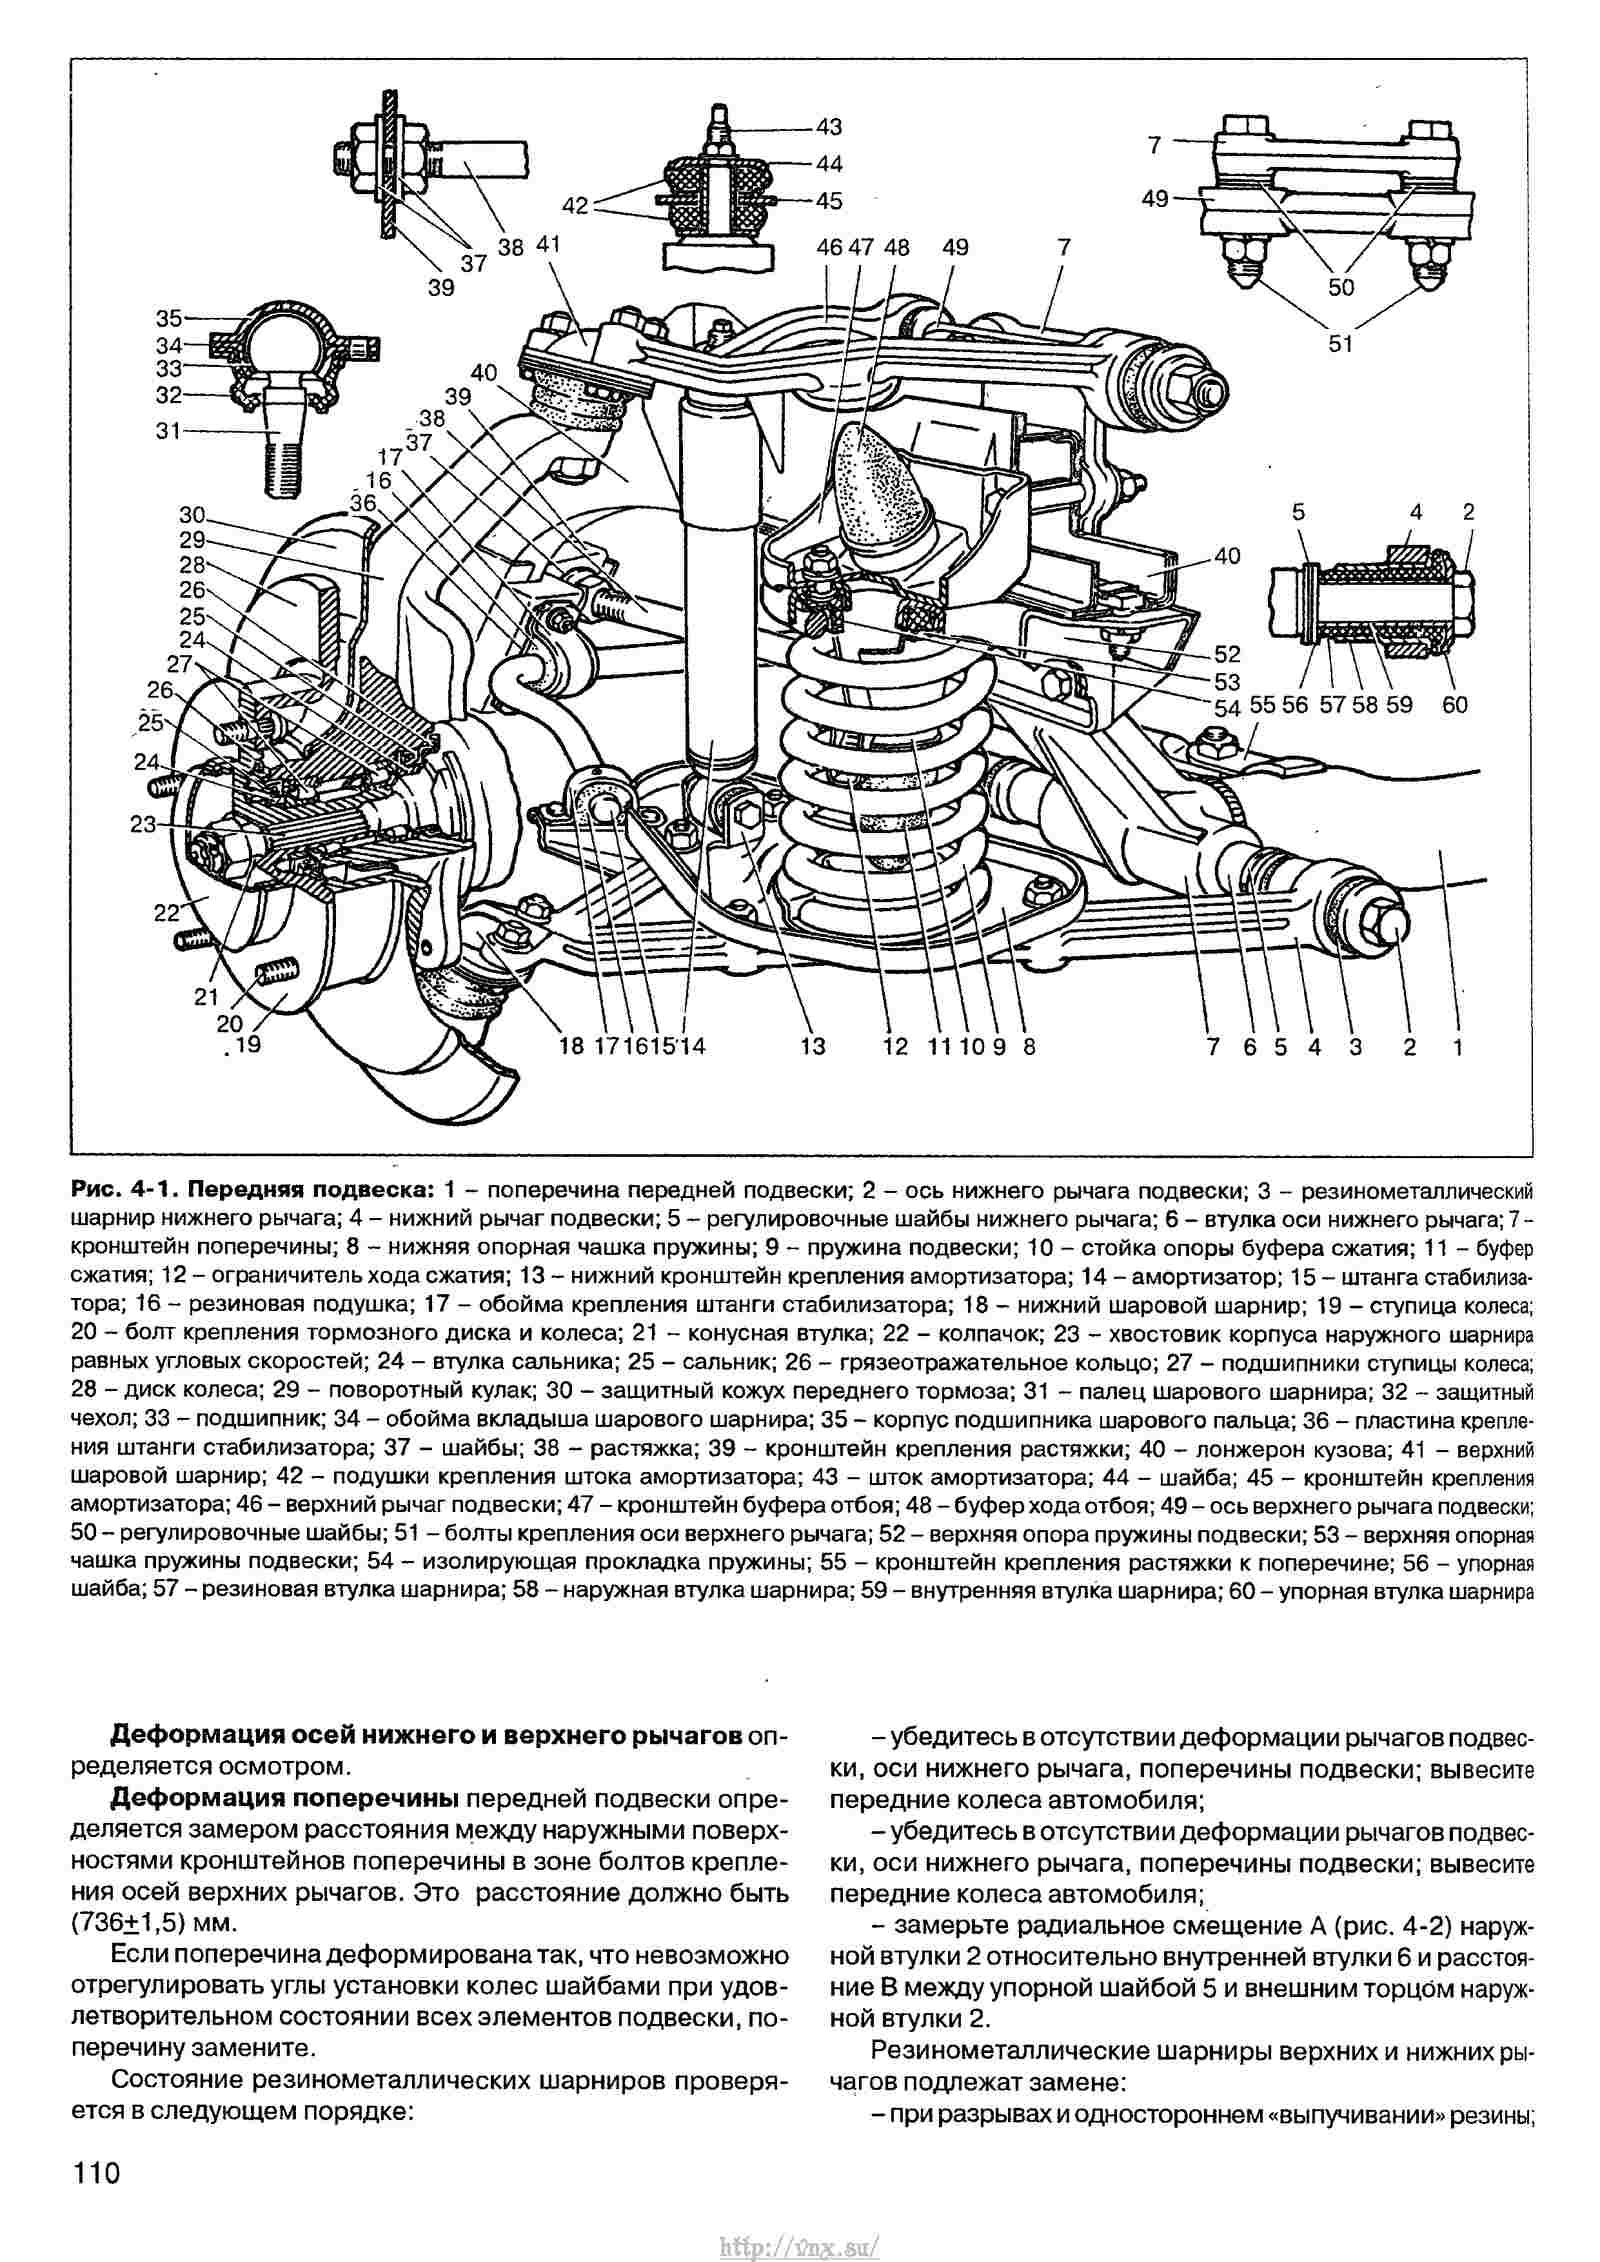 Схема двигателя 21213